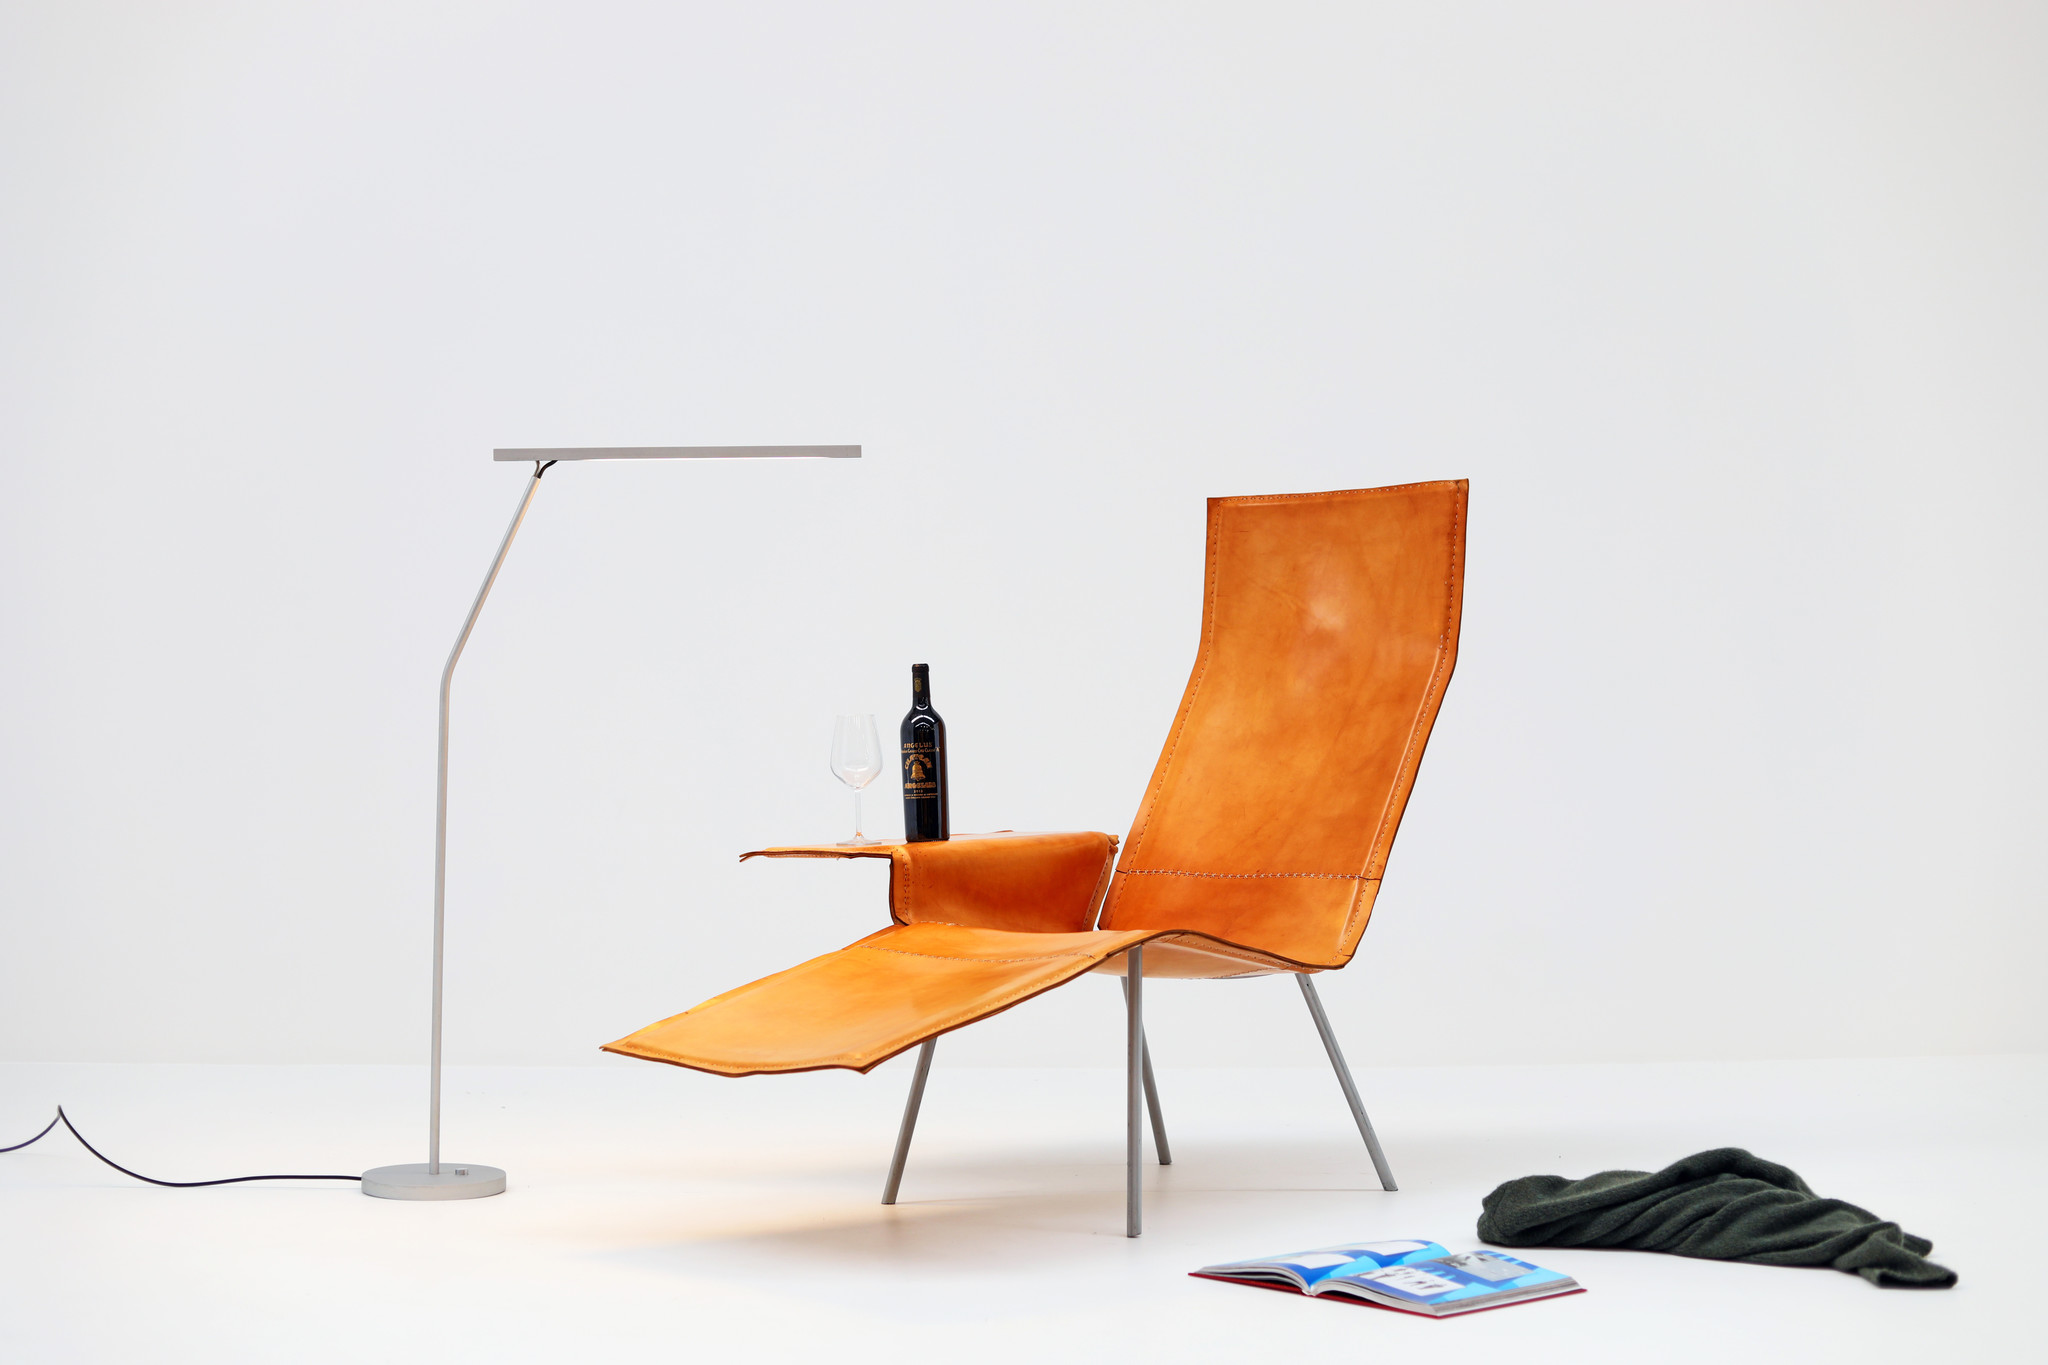 Prototype Maarten Van Severen Lounge chair door Pastoe, 2004